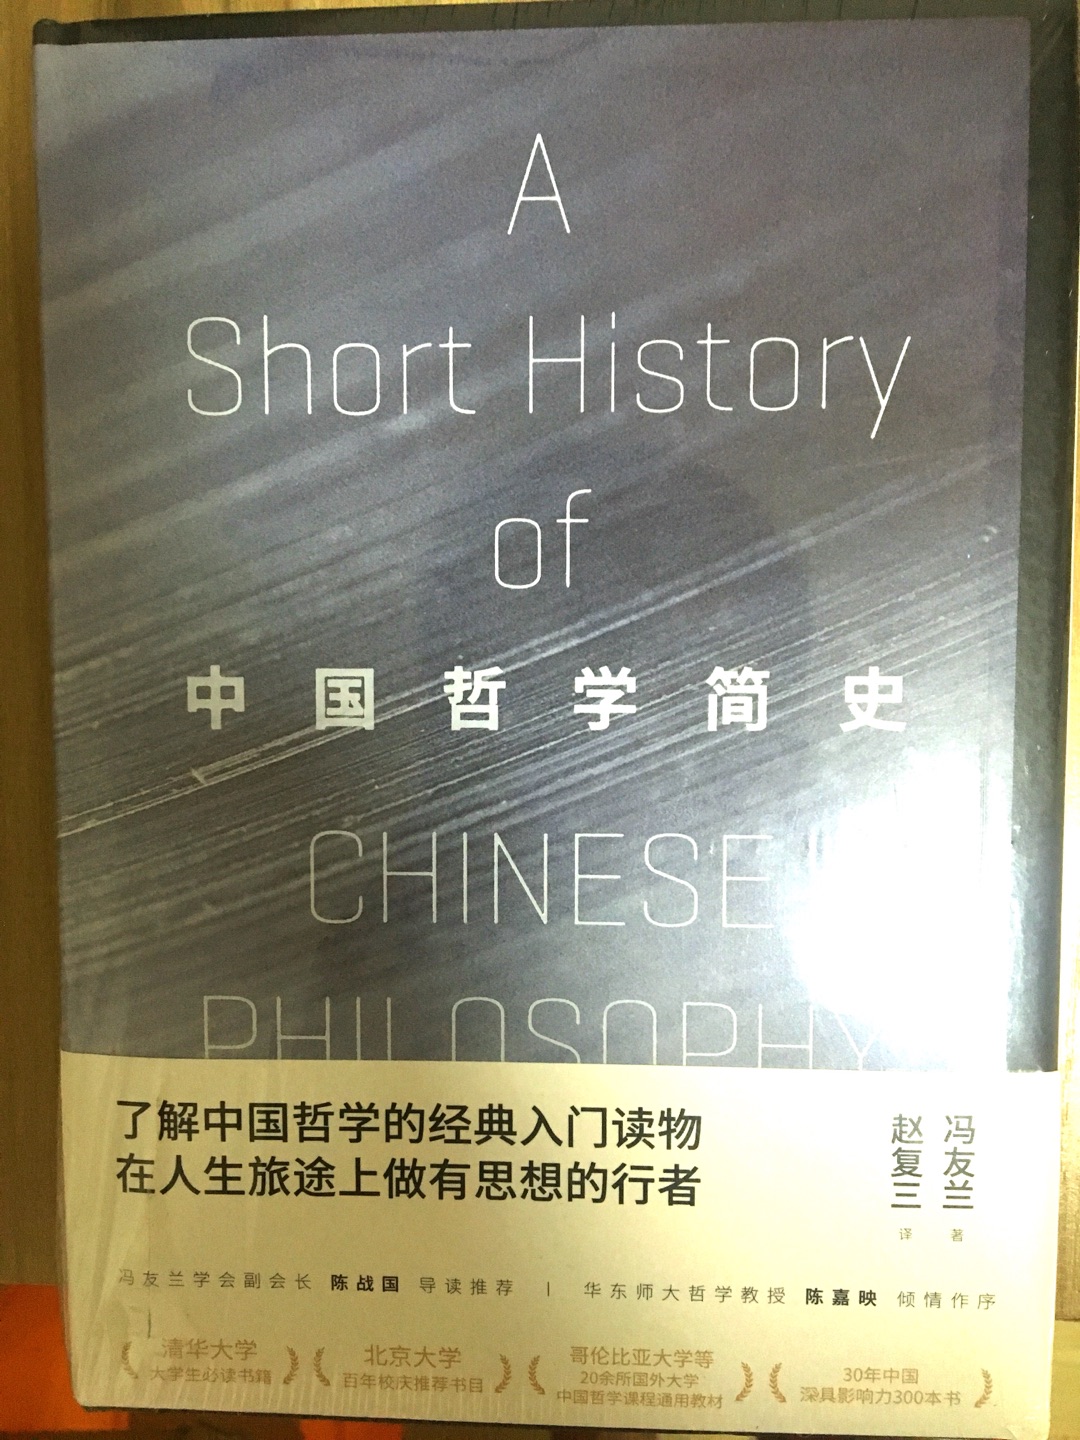 冯友兰的《中国哲学简史》，非常好的介绍中国古代哲学、文化、政治、思想的深入浅出之作。特此推荐，了解国学，不容错过。比南怀瑾讲得更全面、视野广、正统、逻辑性强